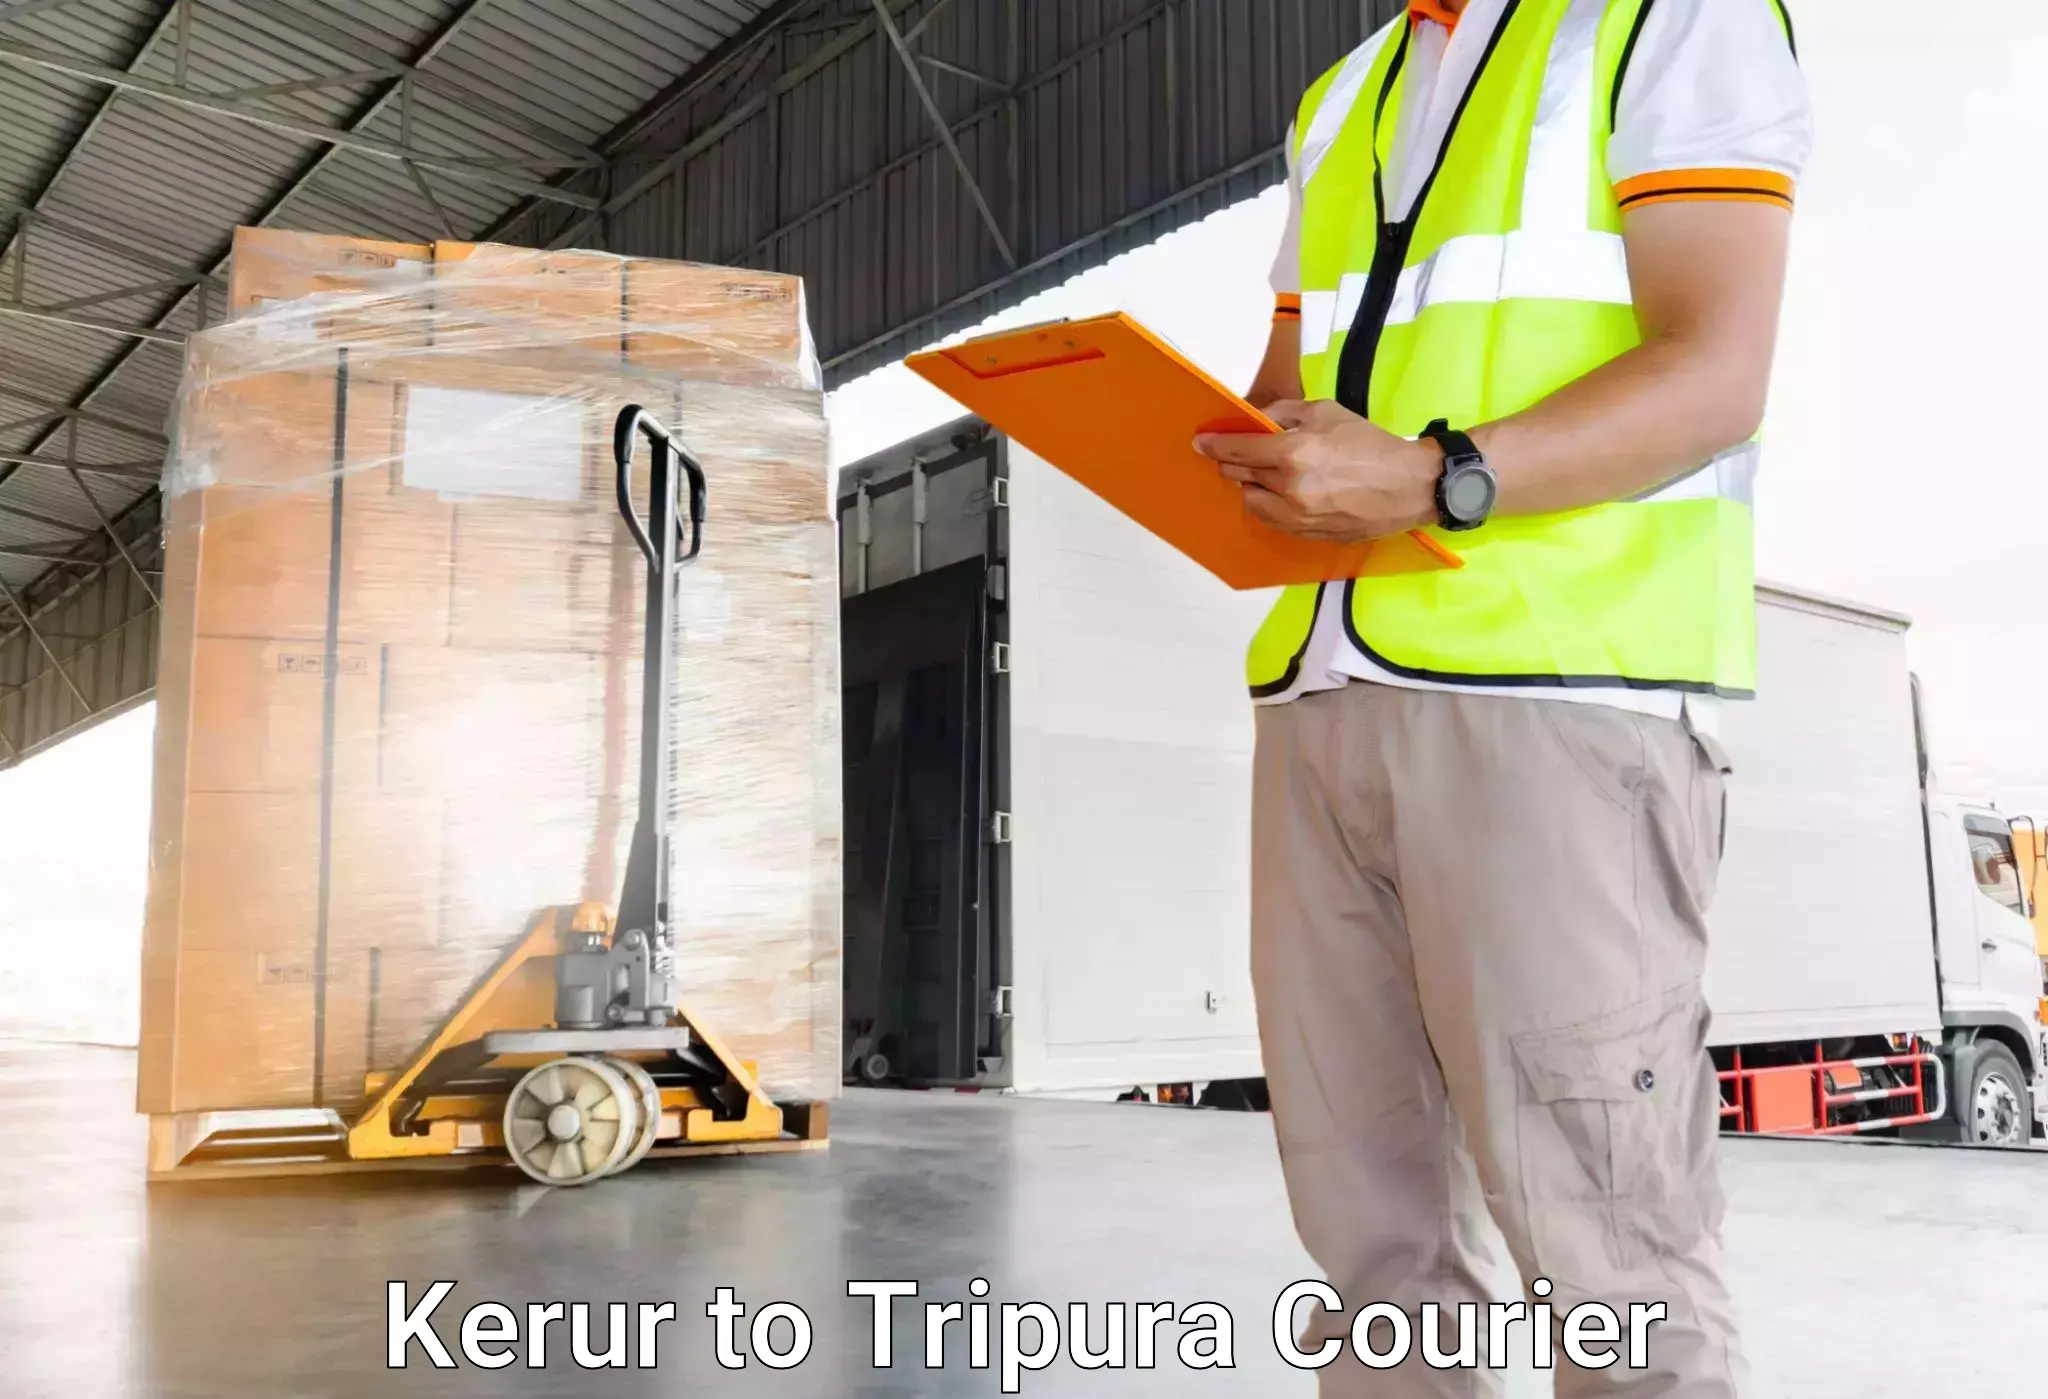 Luggage transport solutions Kerur to Kamalpur